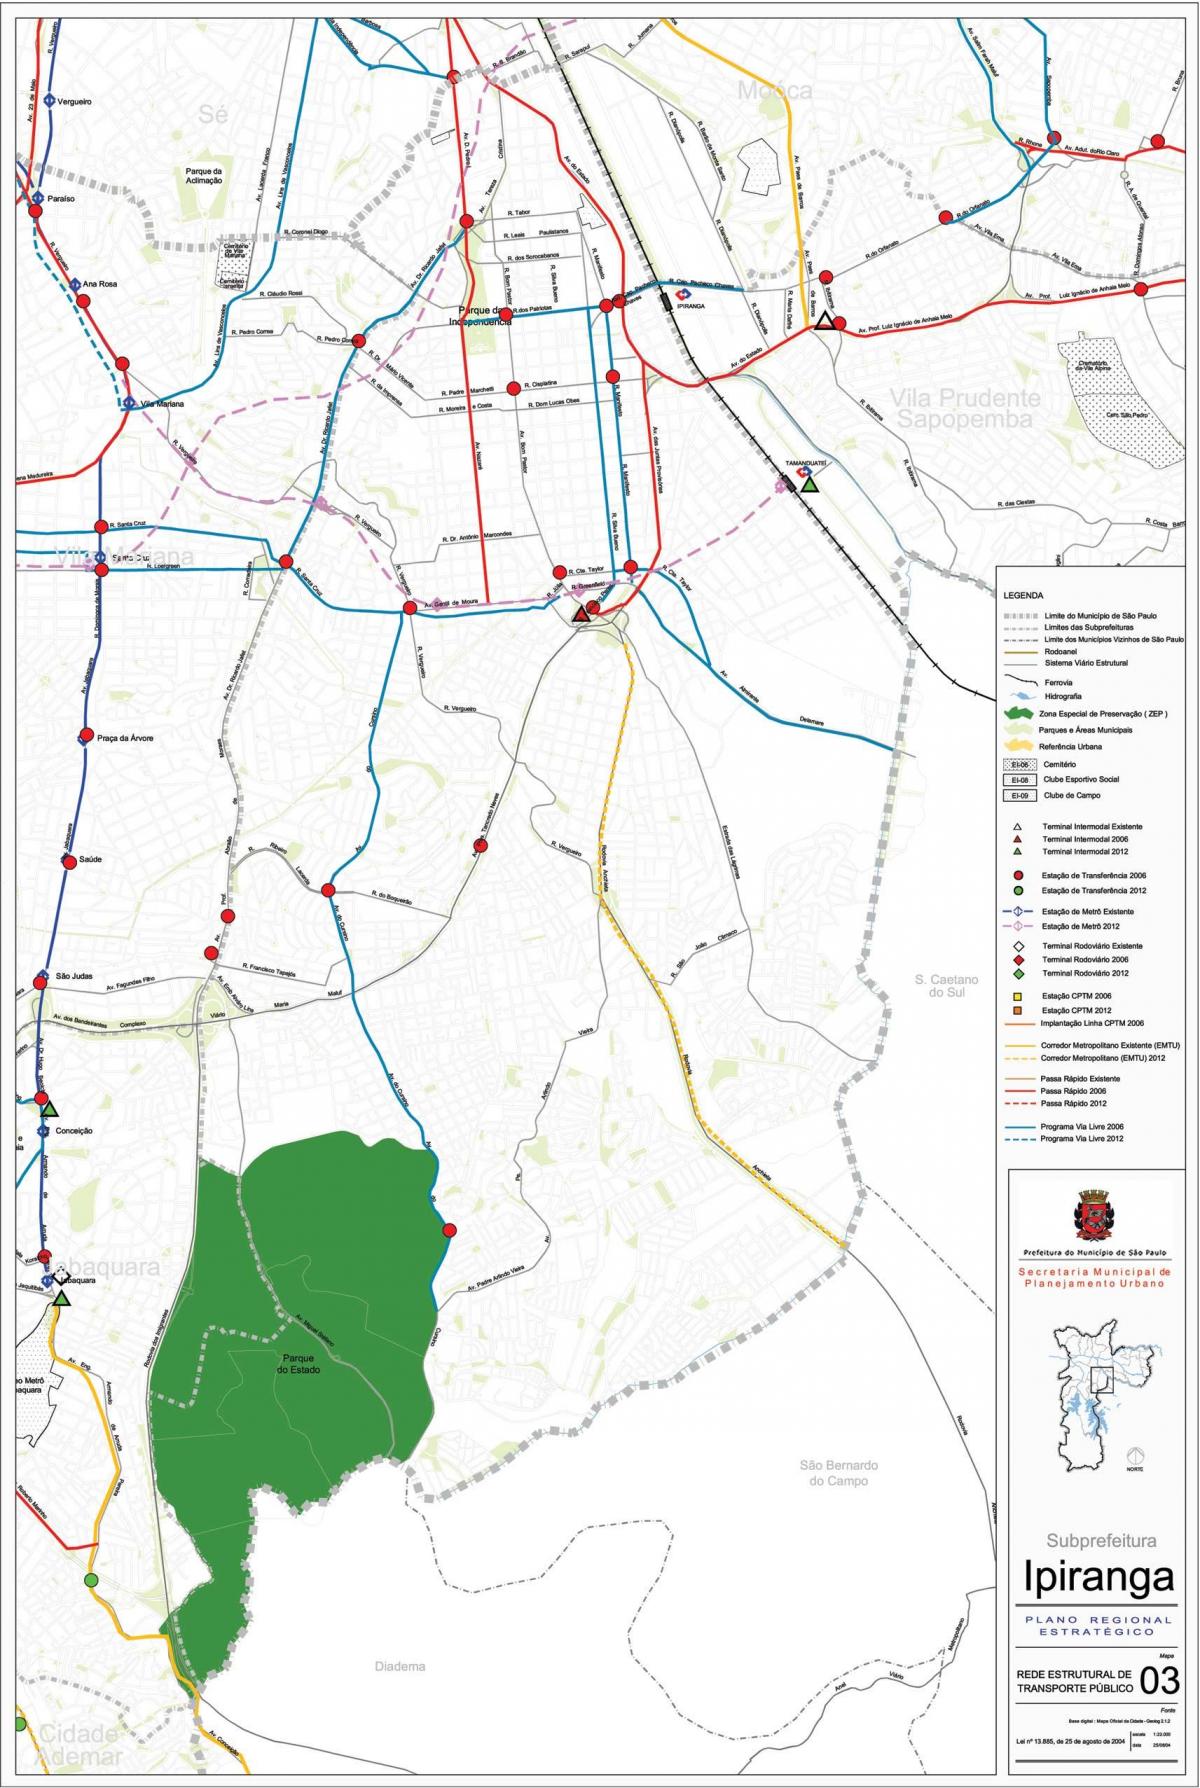 Zemljevid Ipiranga Sao Paulo - Javni prevozi